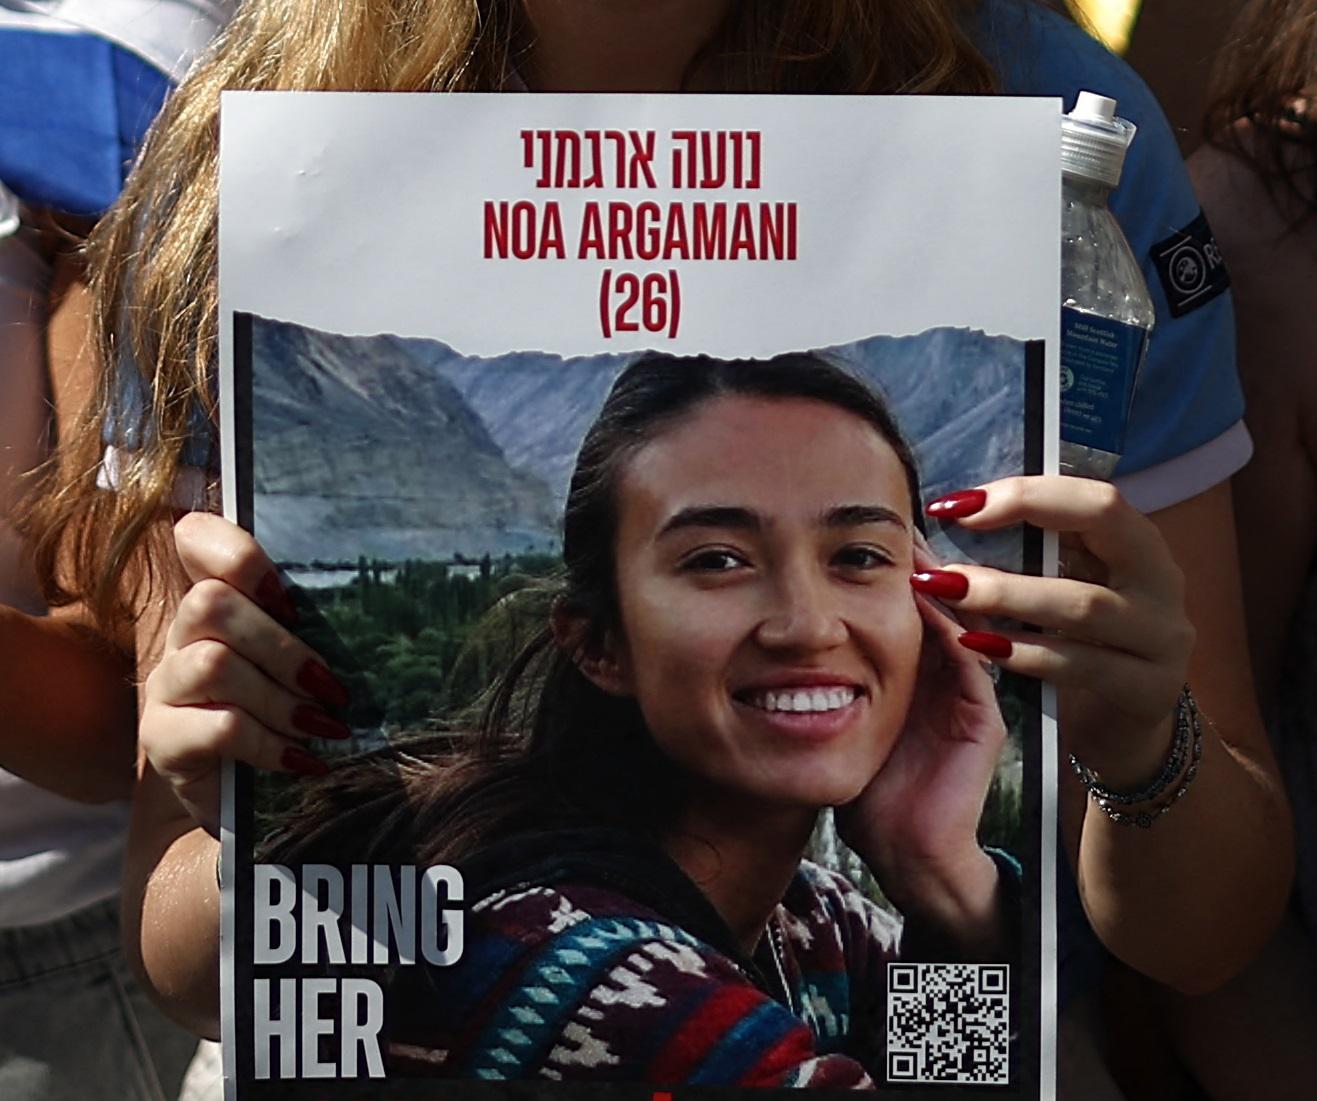 Noa Argamani liberata - chi è la studentessa israeliana rapita durante il rave 